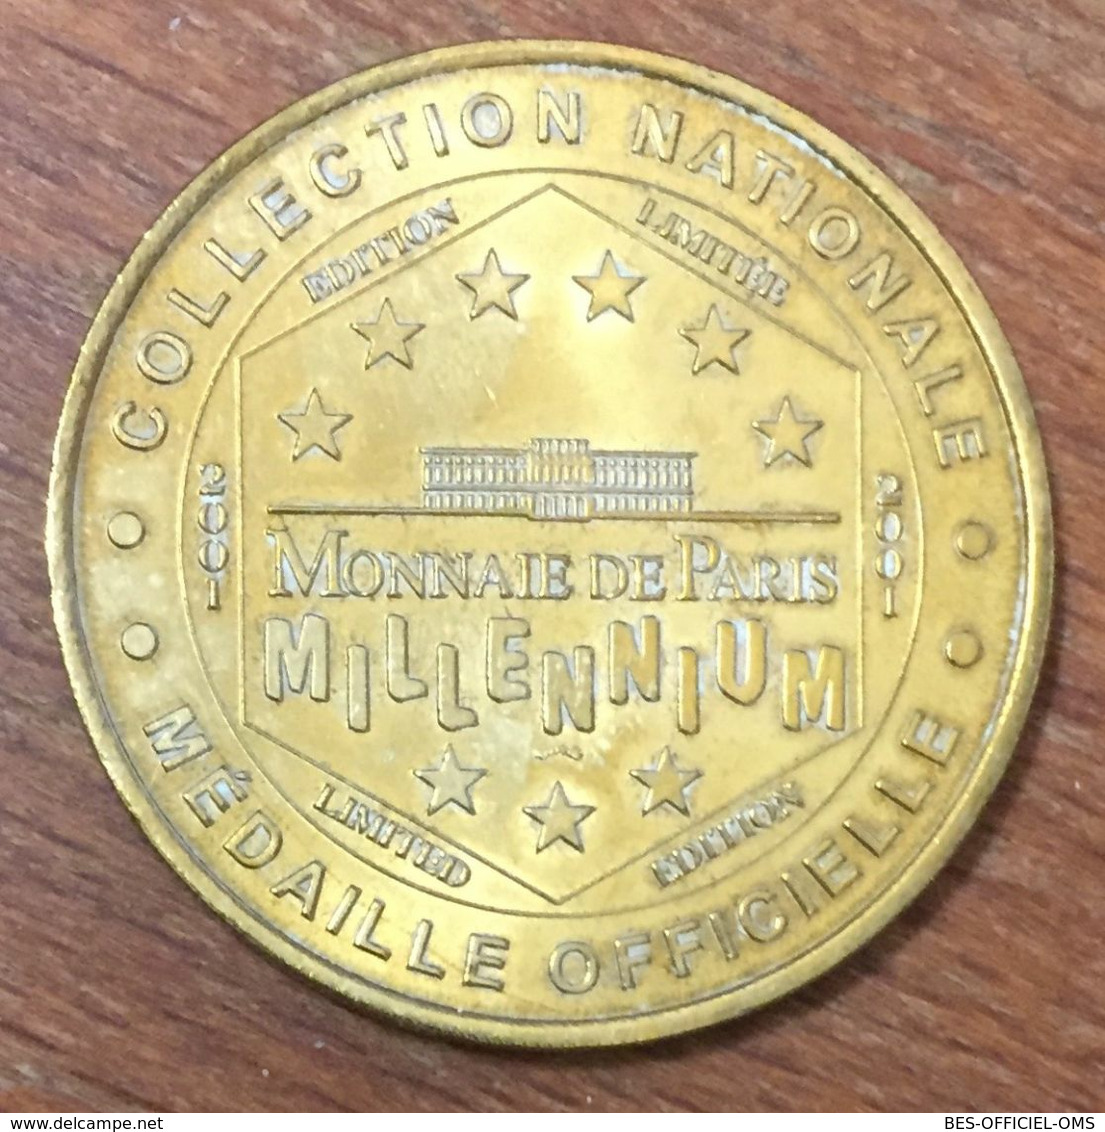 75004 NOTRE DAME DE PARIS MDP 2001 MÉDAILLE SOUVENIR MONNAIE DE PARIS JETON TOURISTIQUE MEDALS TOKENS COINS - 2001